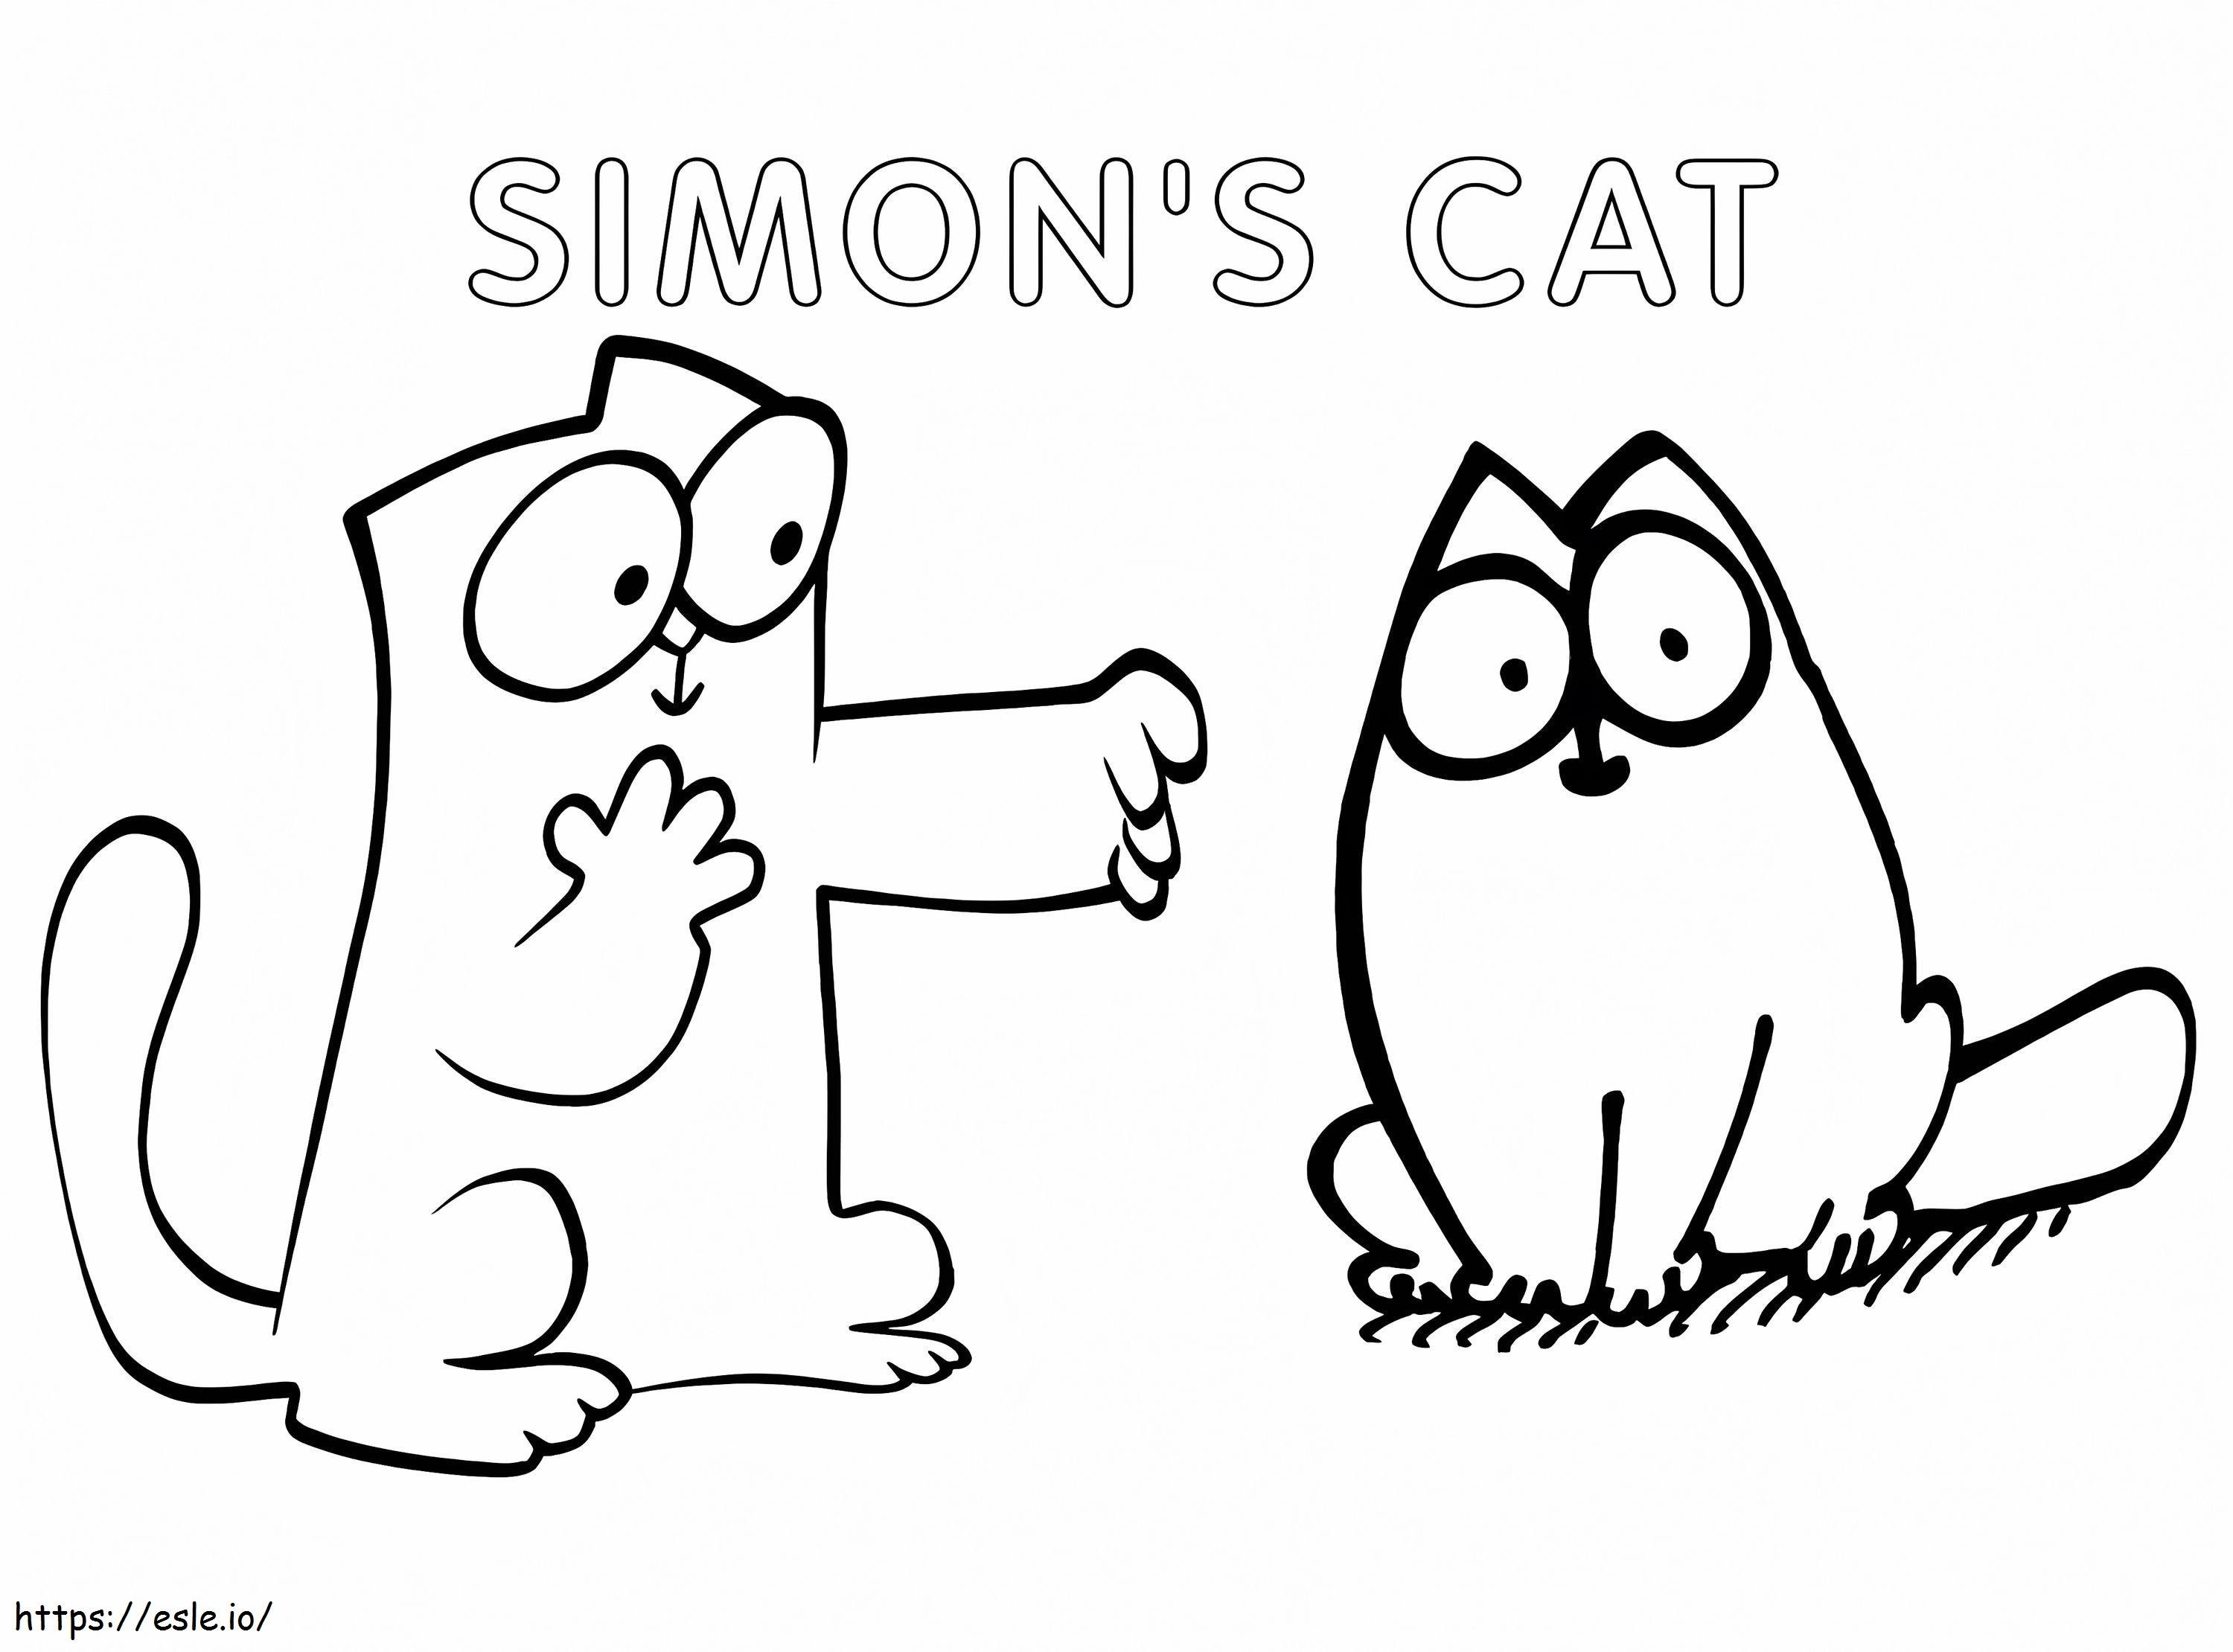 Gato Simons para imprimir gratis para colorear